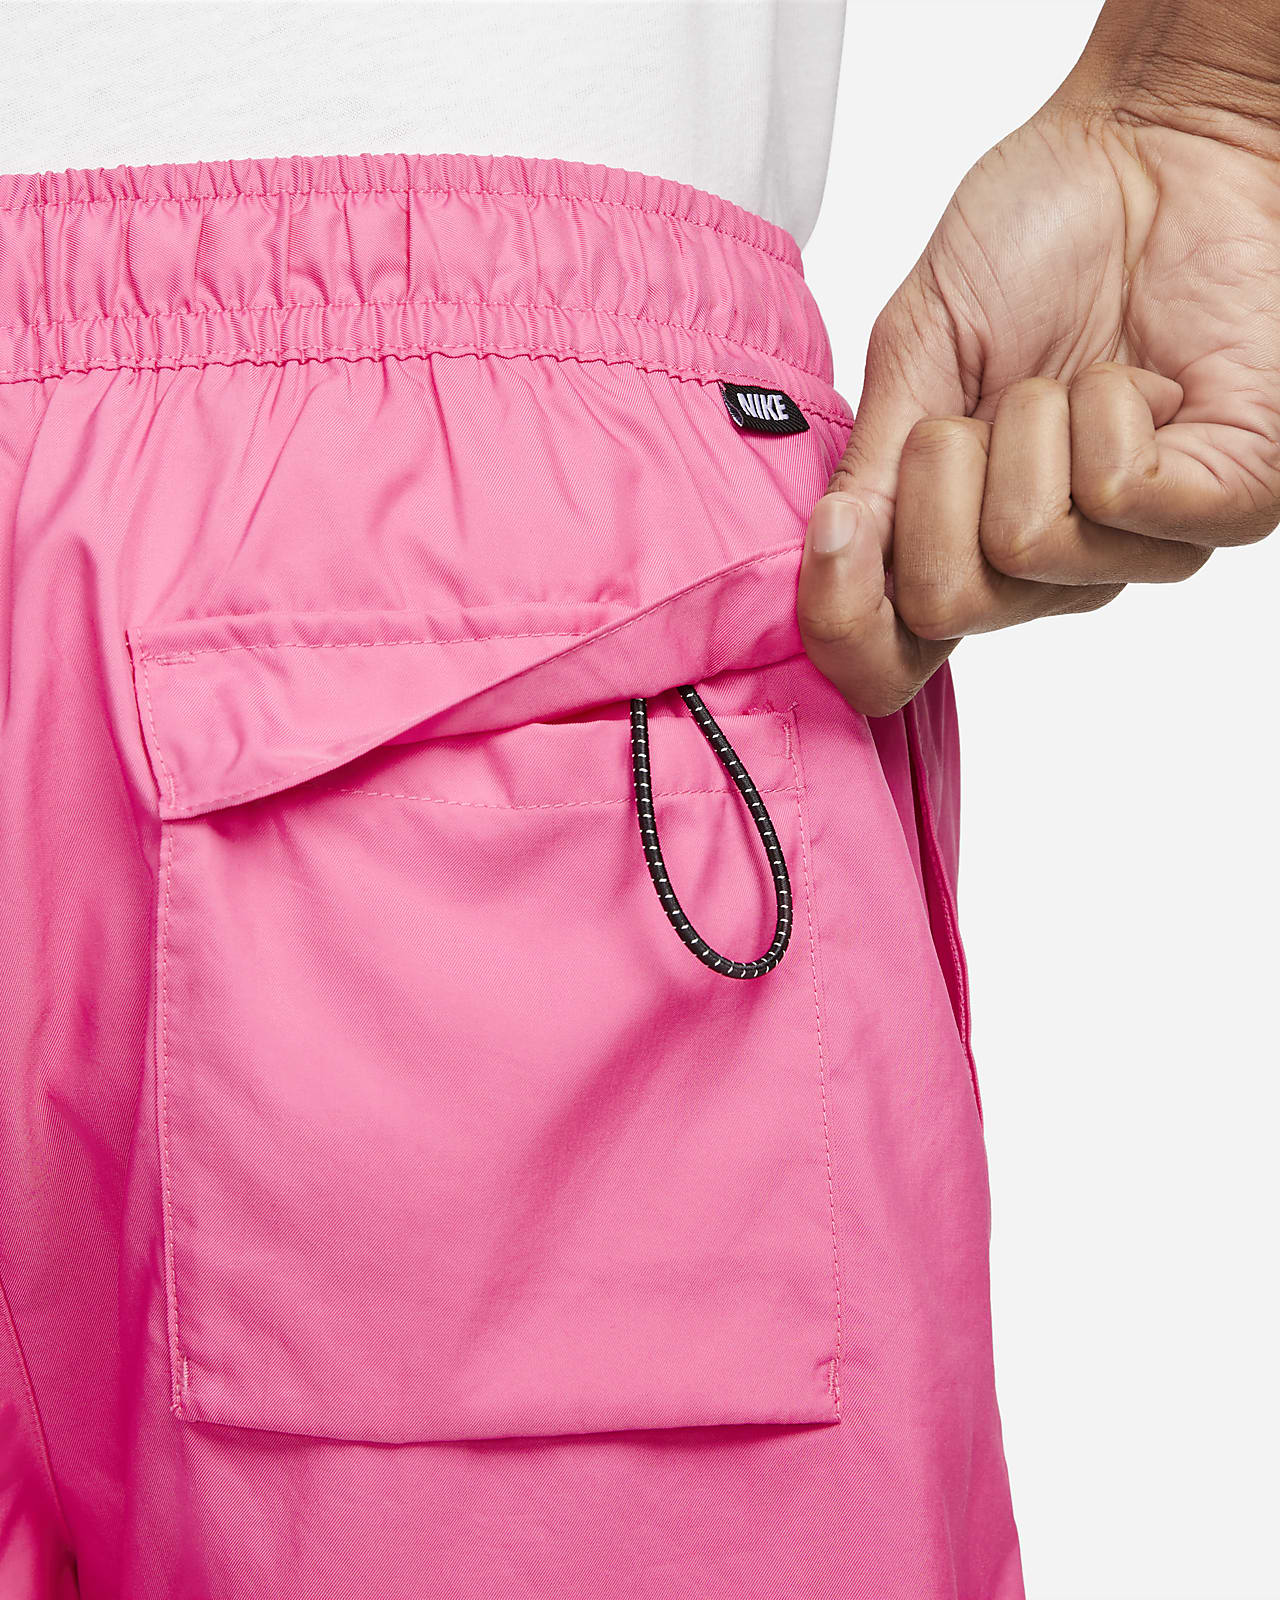 letterlijk subtiel importeren Nike Sportswear Sport Essentials Men's Woven Lined Flow Shorts. Nike.com